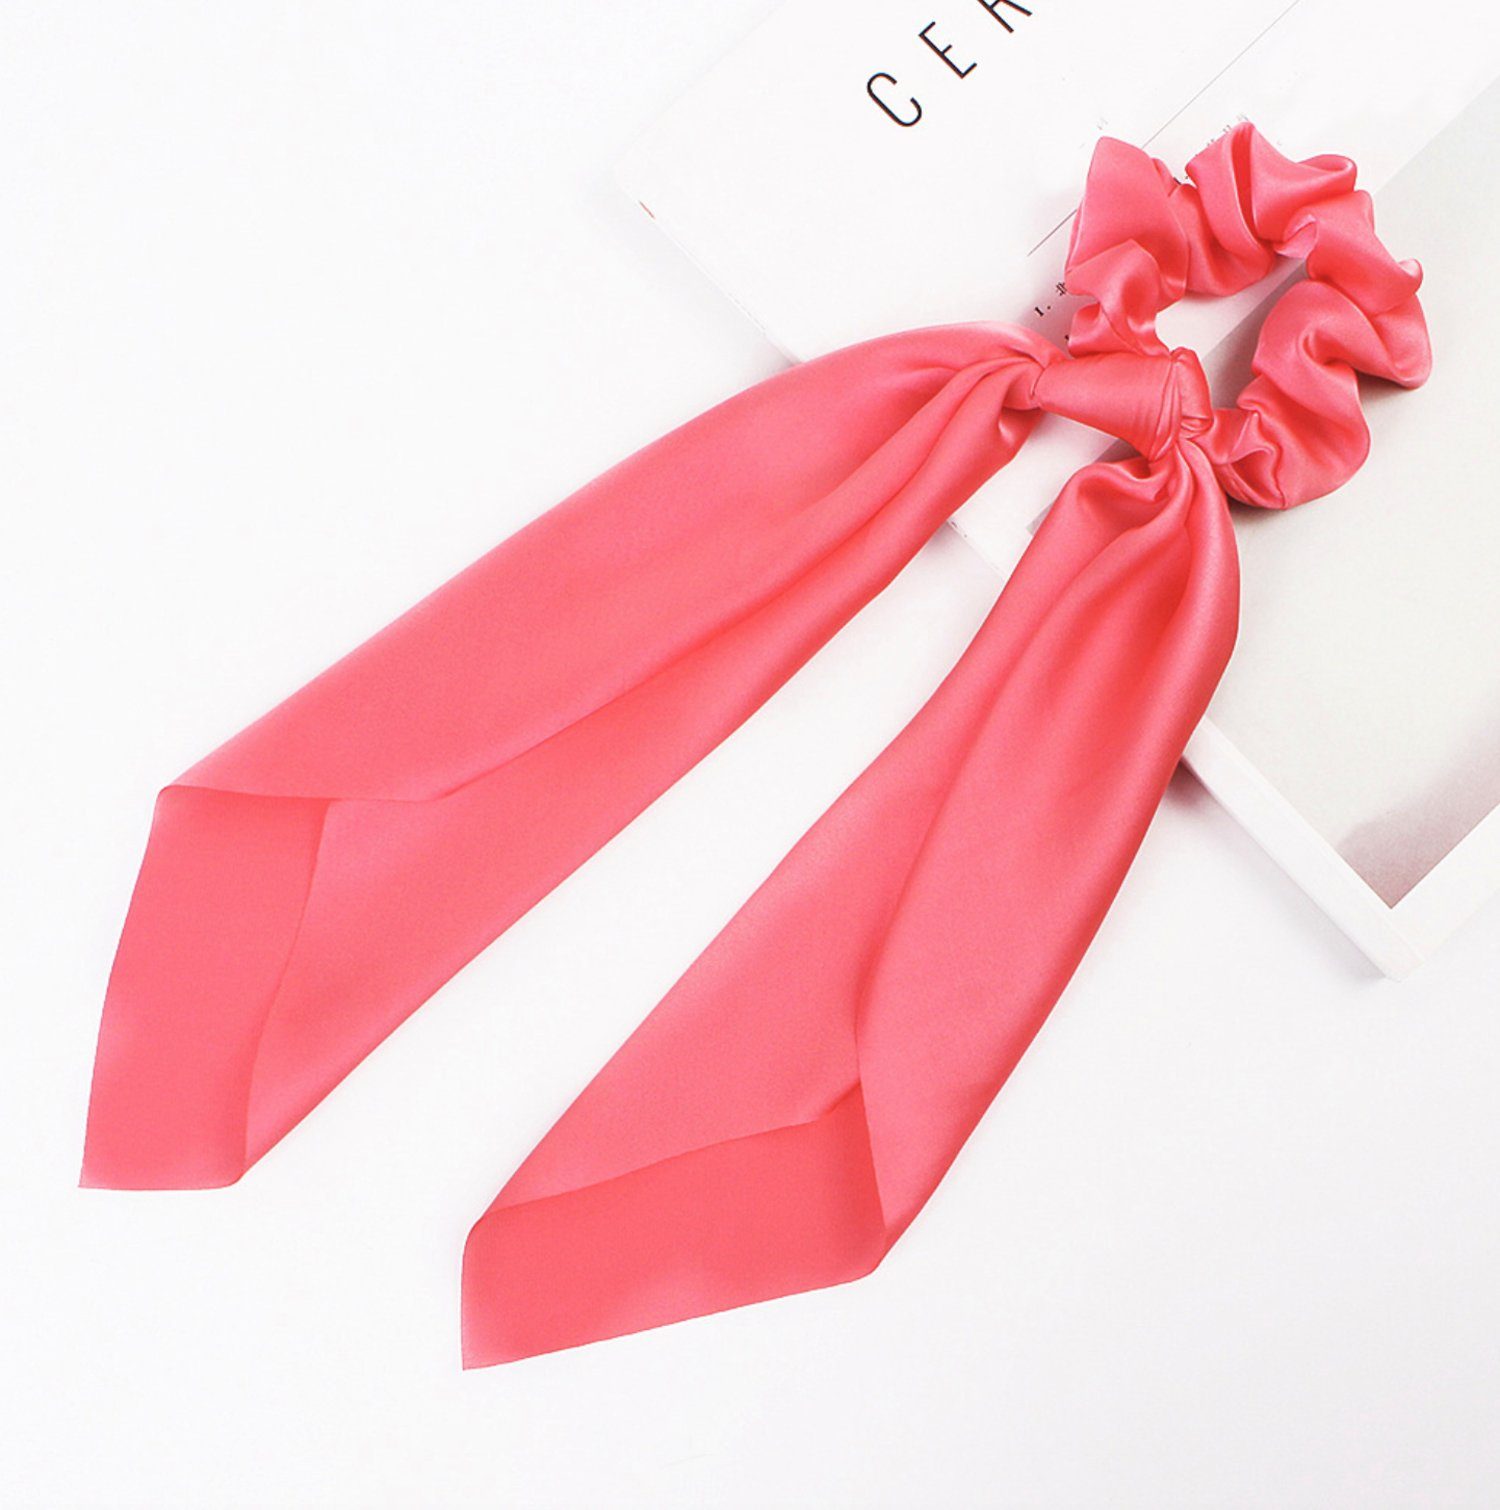 Friseurmeister Haargummi Scrunchie mit Schleife Satin Elastic Haargummis Ribbon Bow für dickes und feines Haar Pink